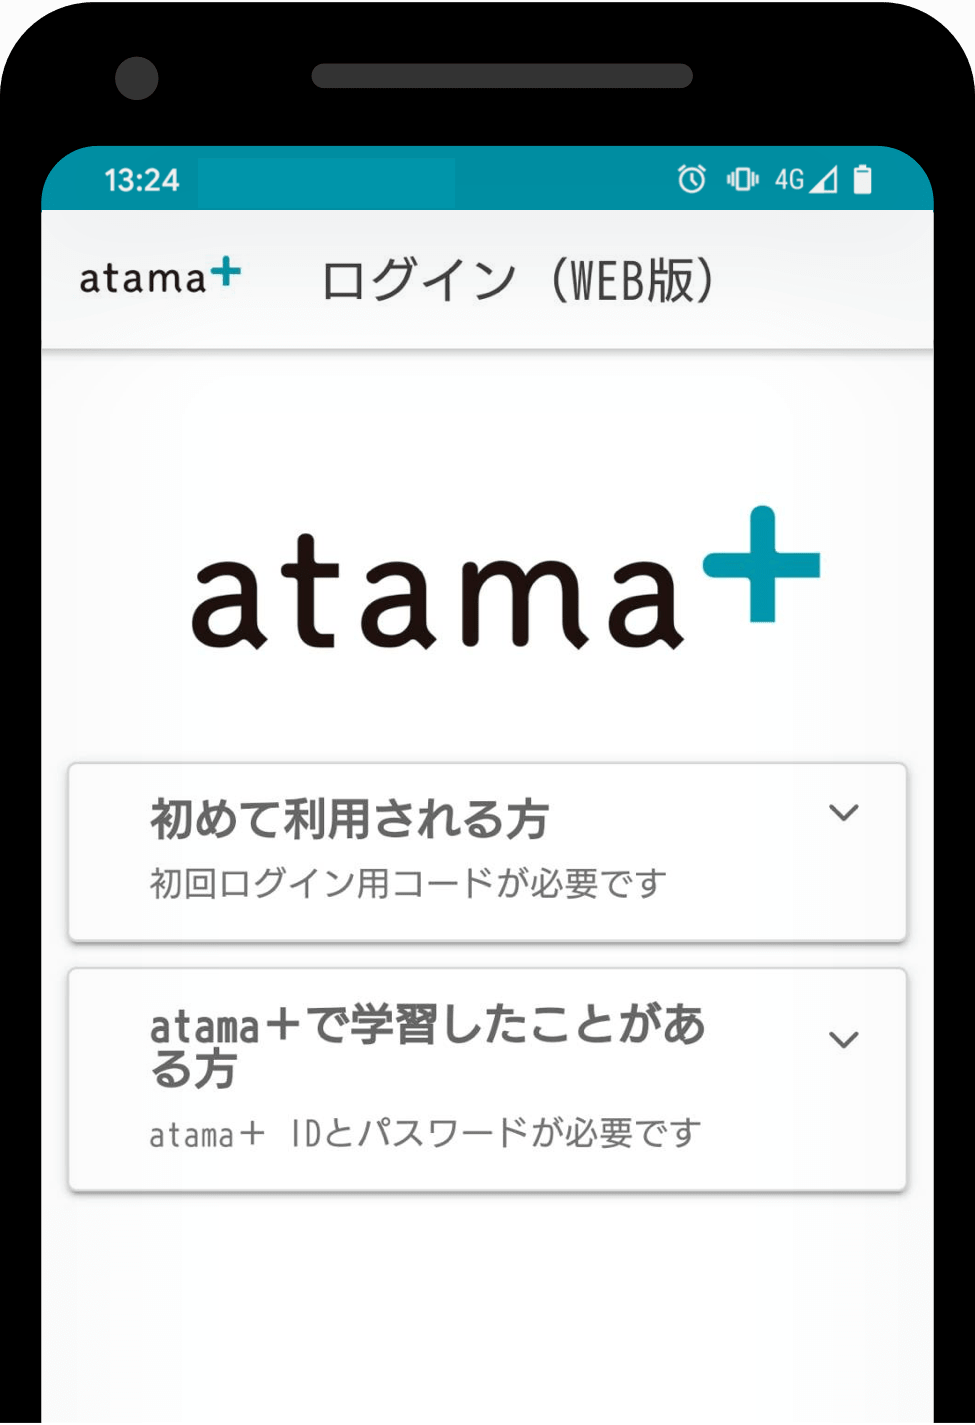 Web アタマ プラス atama plus、タブレット型AI教材「atama＋」のWeb版を臨時で提供開始、生徒の自宅での受講が可能に：EdTechZine（エドテックジン）